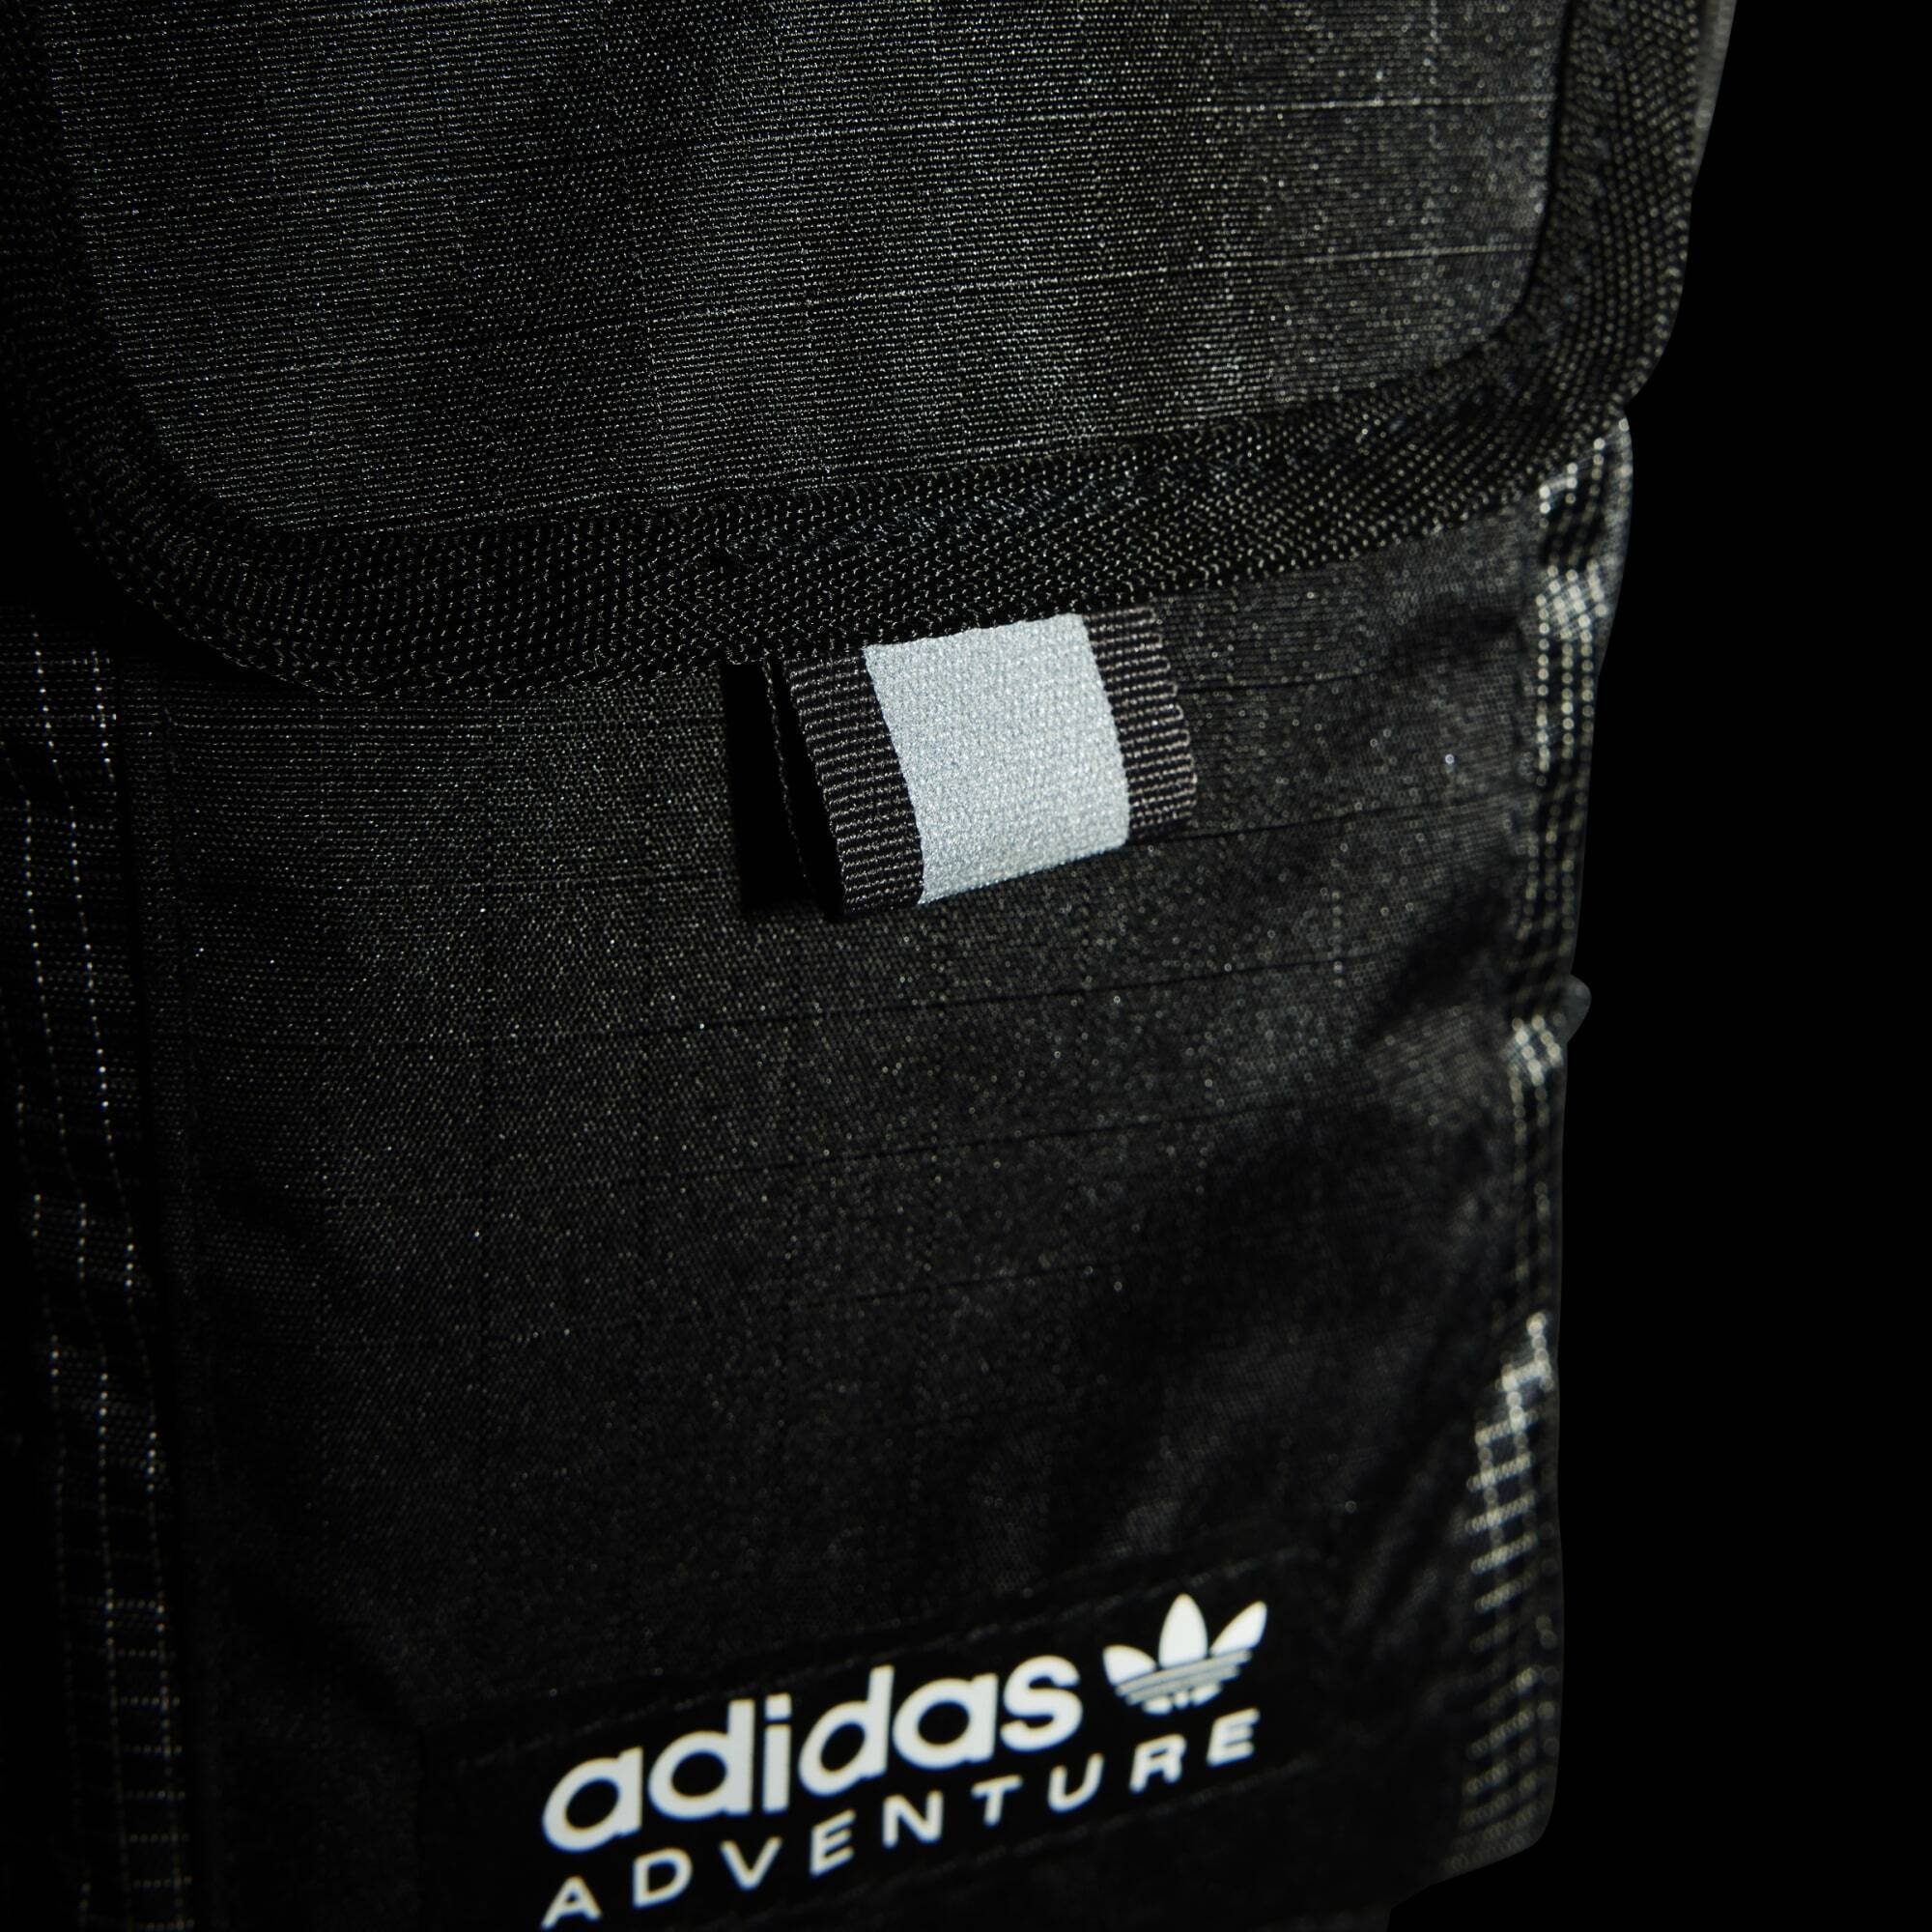 FLAG TASCHE / Black Black ADIDAS Umhängetasche adidas S ADVENTURE Originals